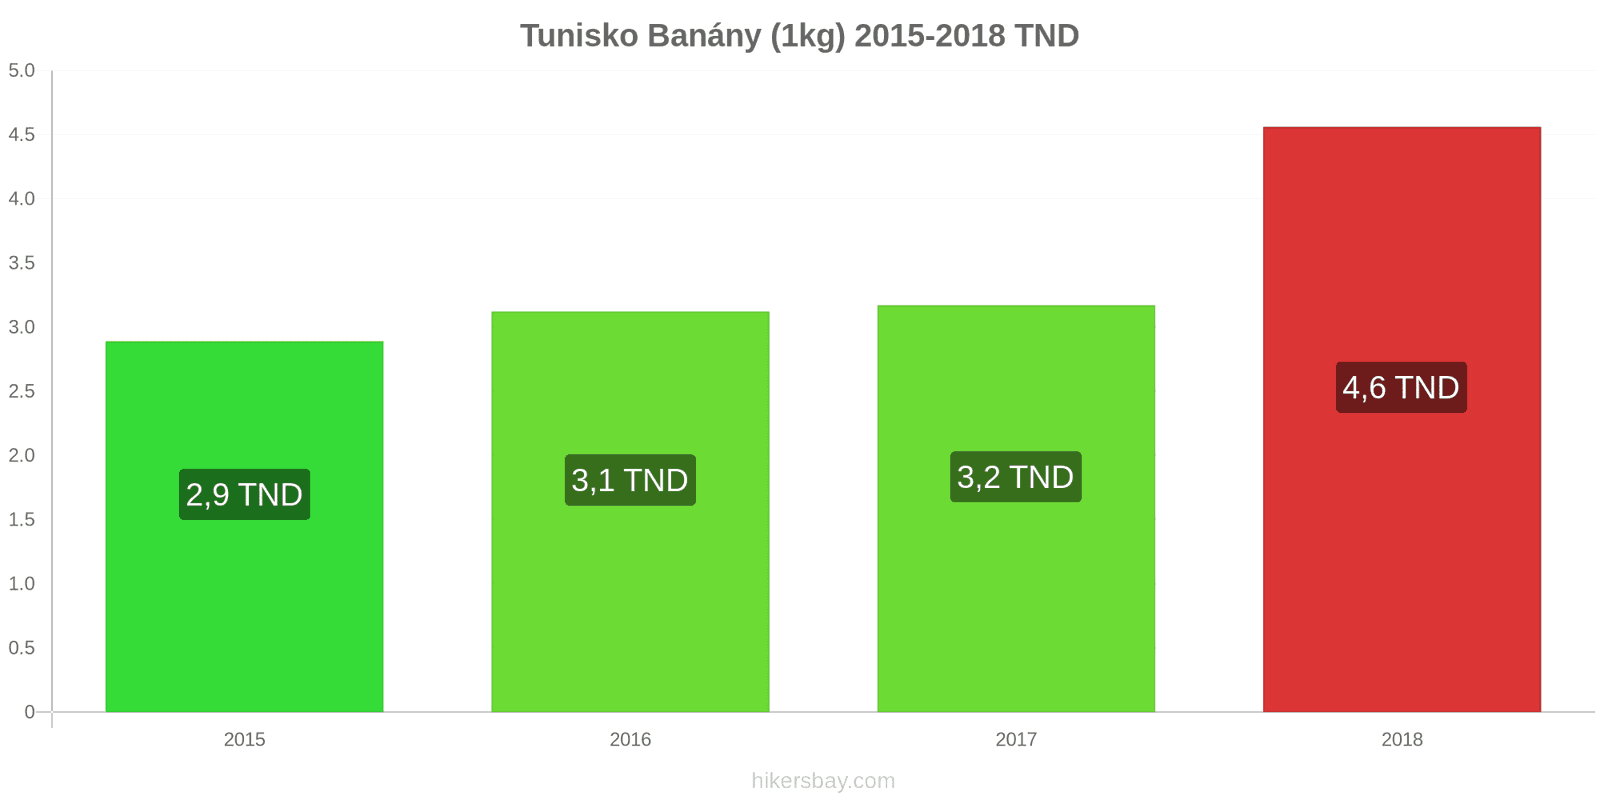 Tunisko změny cen Banány (1kg) hikersbay.com